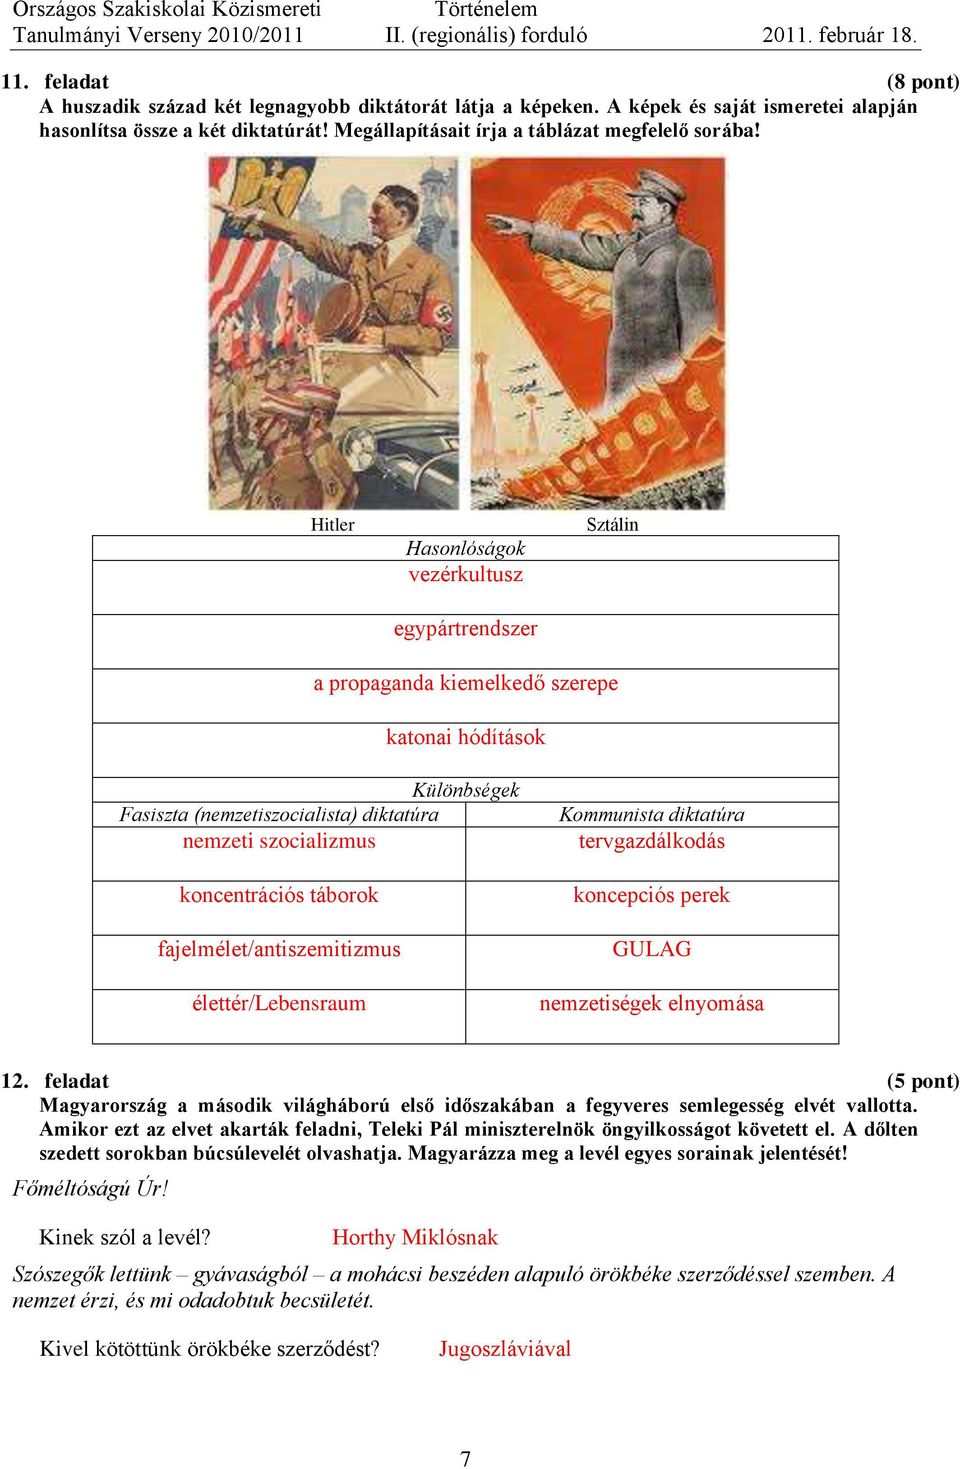 Hitler Hasonlóságok vezérkultusz egypártrendszer Sztálin a propaganda kiemelkedő szerepe katonai hódítások Különbségek Fasiszta (nemzetiszocialista) diktatúra nemzeti szocializmus koncentrációs